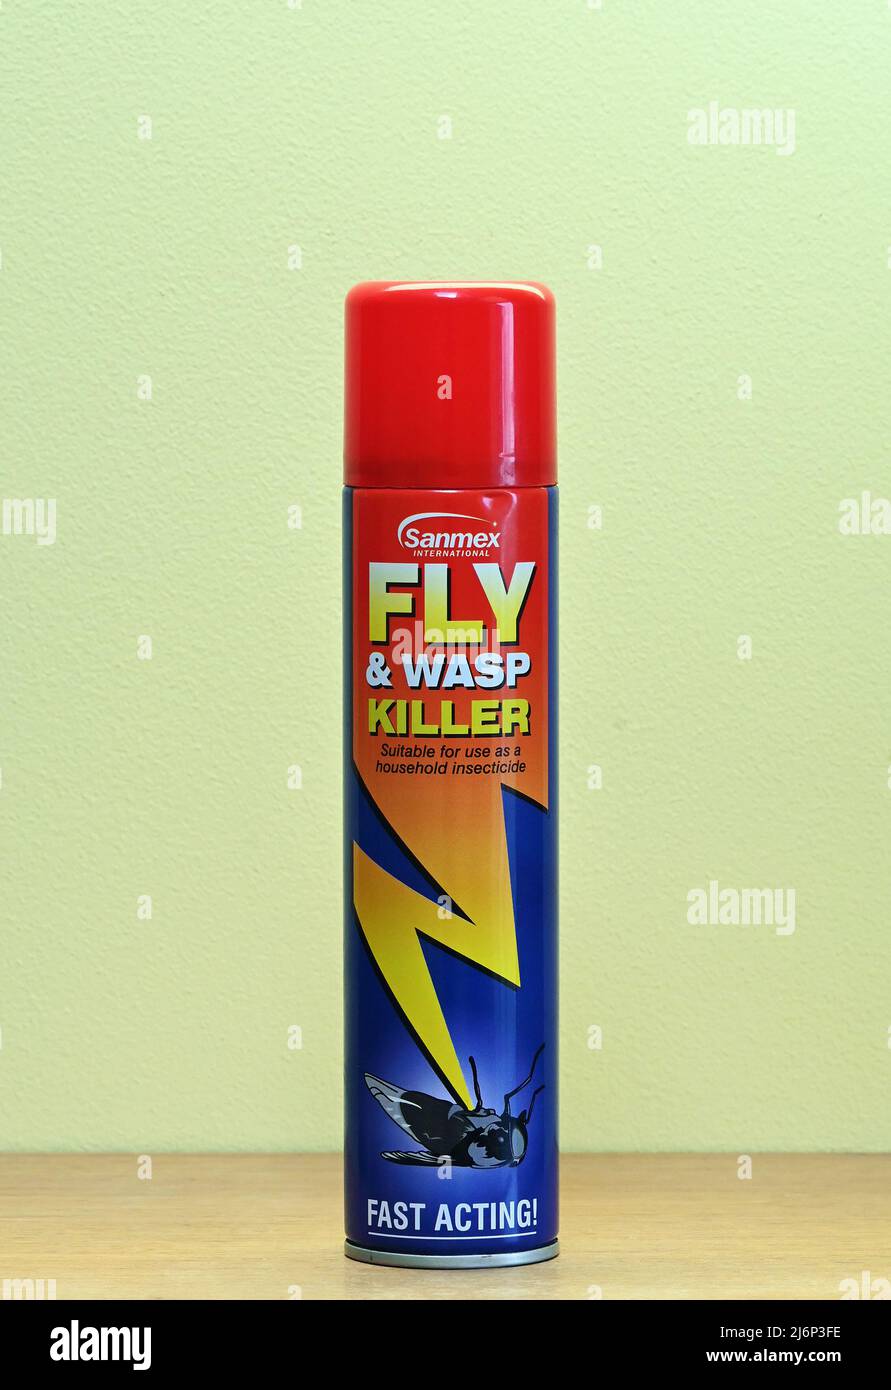 Sanmex International. Fly & Wasp Killer. Geeignet für den Einsatz als Insektizid im Haushalt. Schnell! Sprühdose. Stockfoto